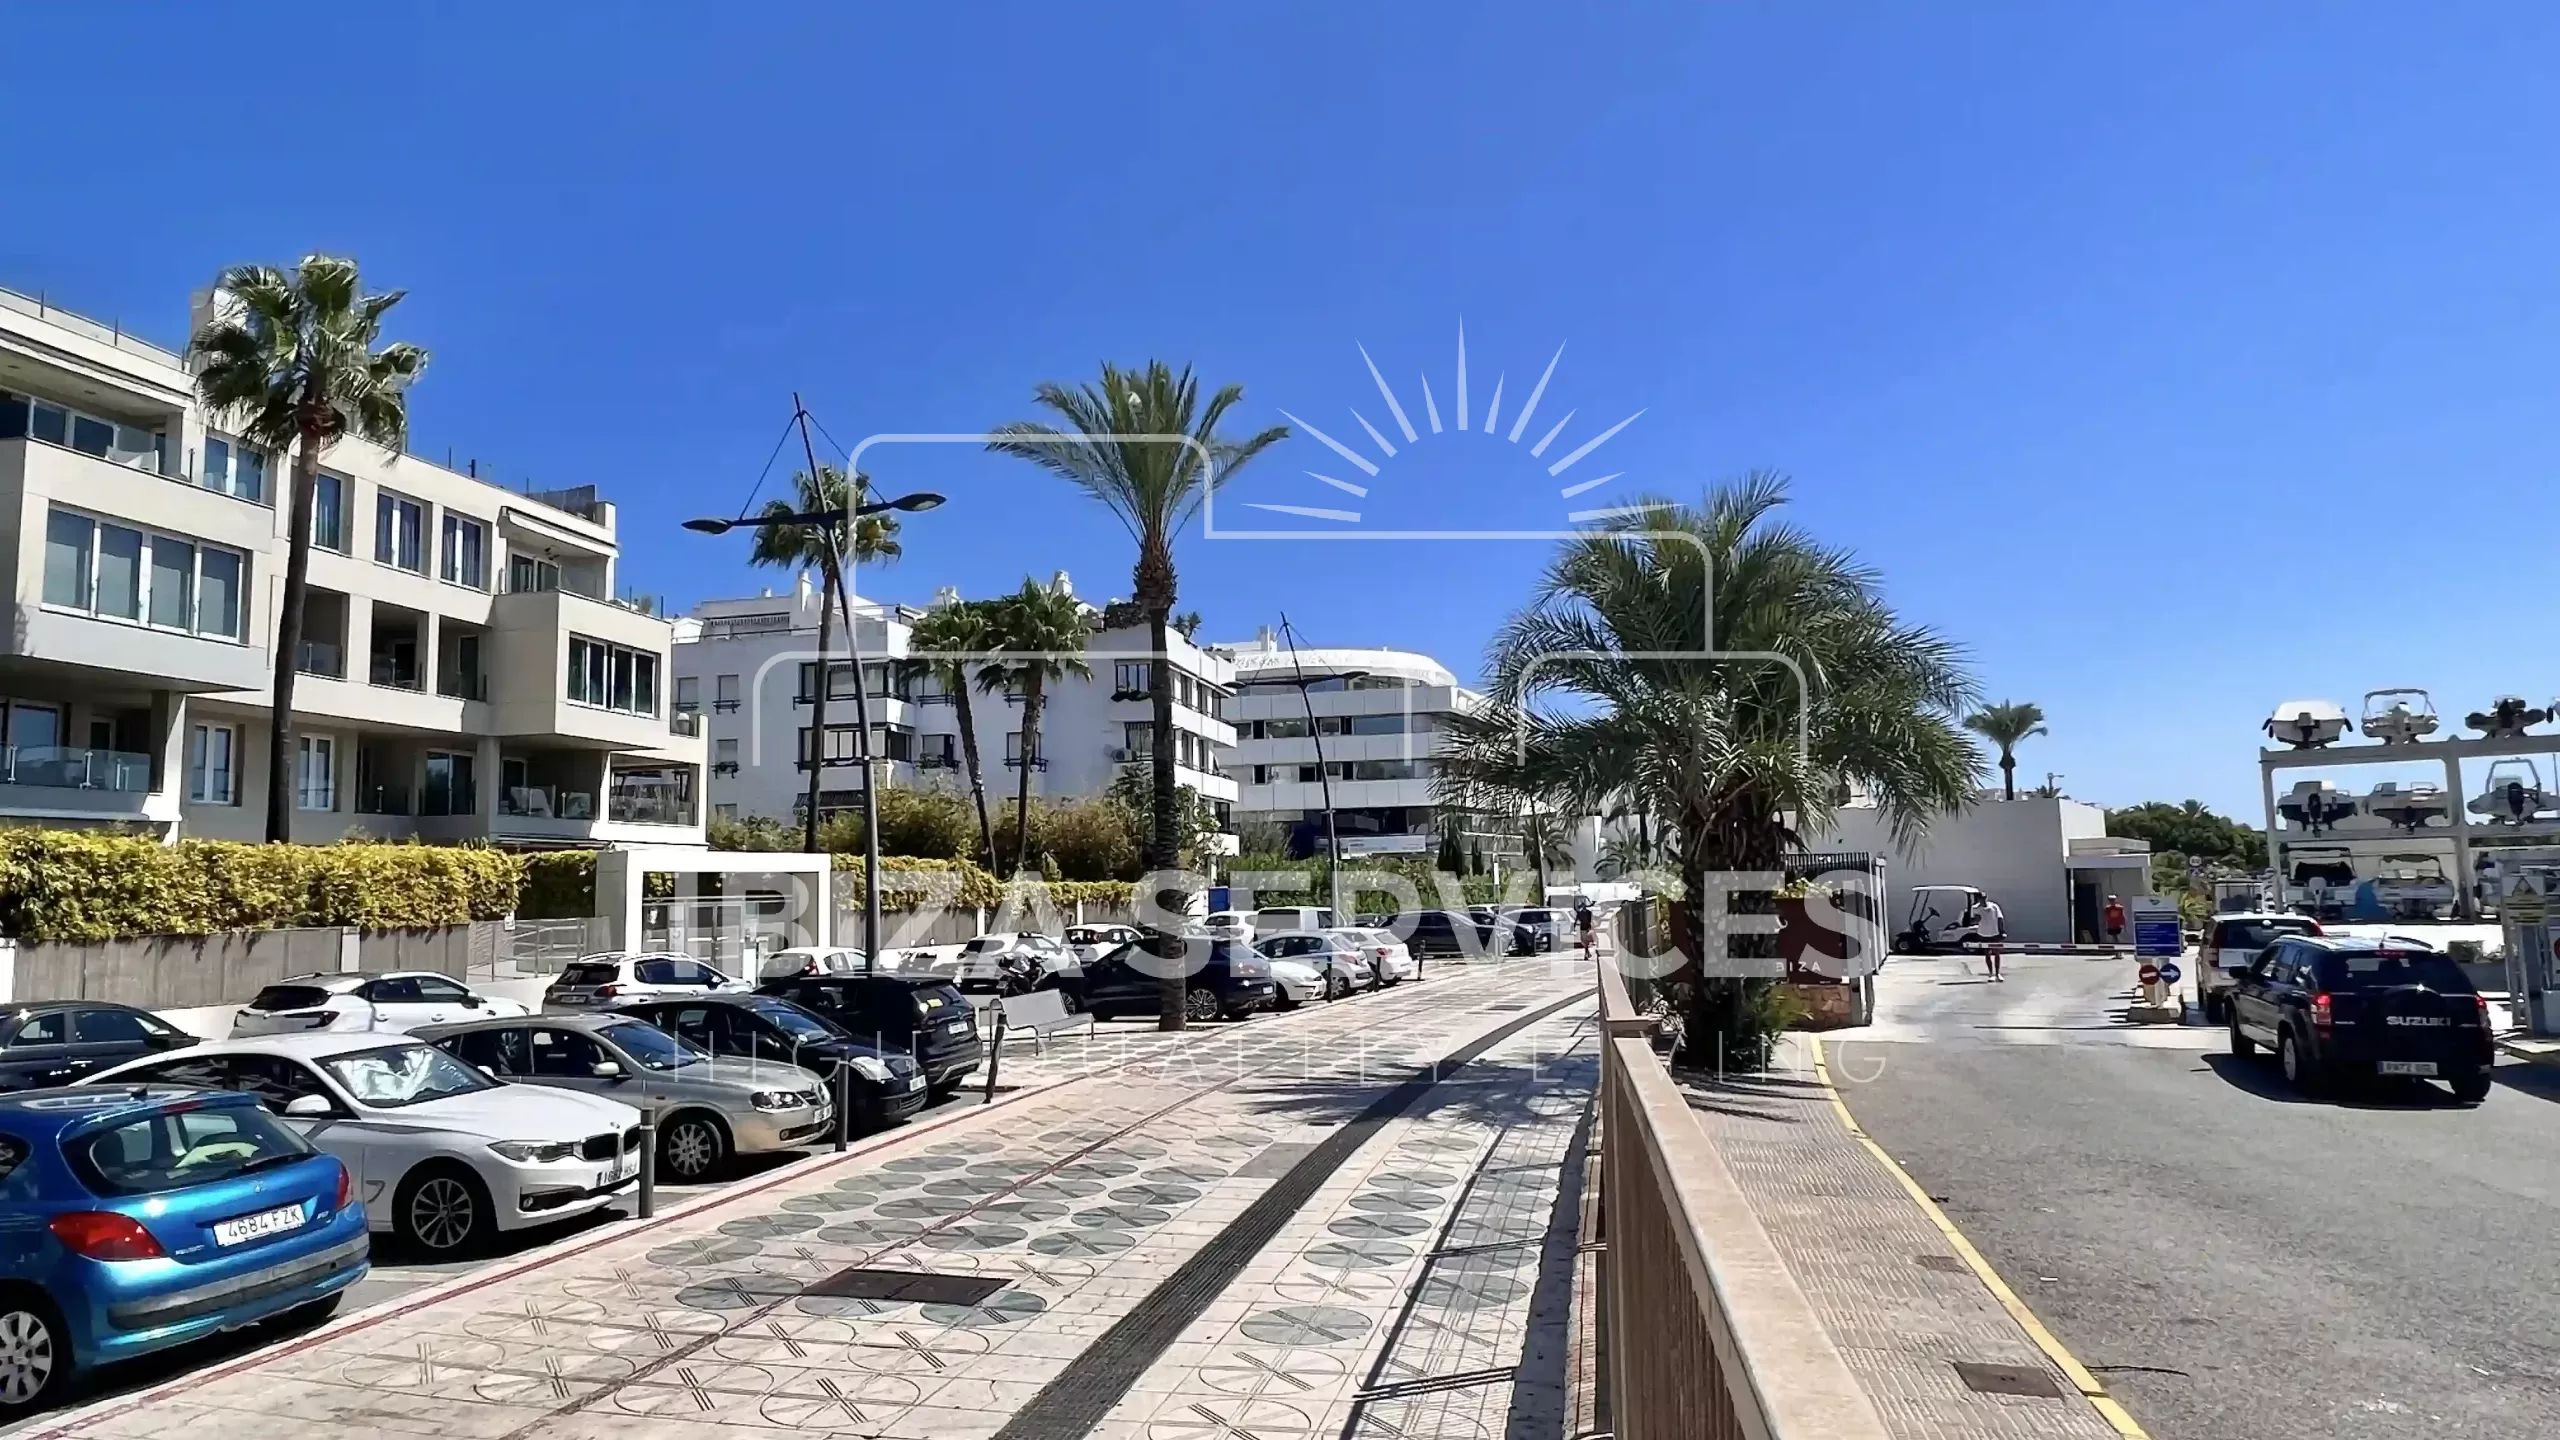 Espacio Comercial Excepcional en Marina Botafoch, Ibiza: Una Oportunidad de Inversión Única